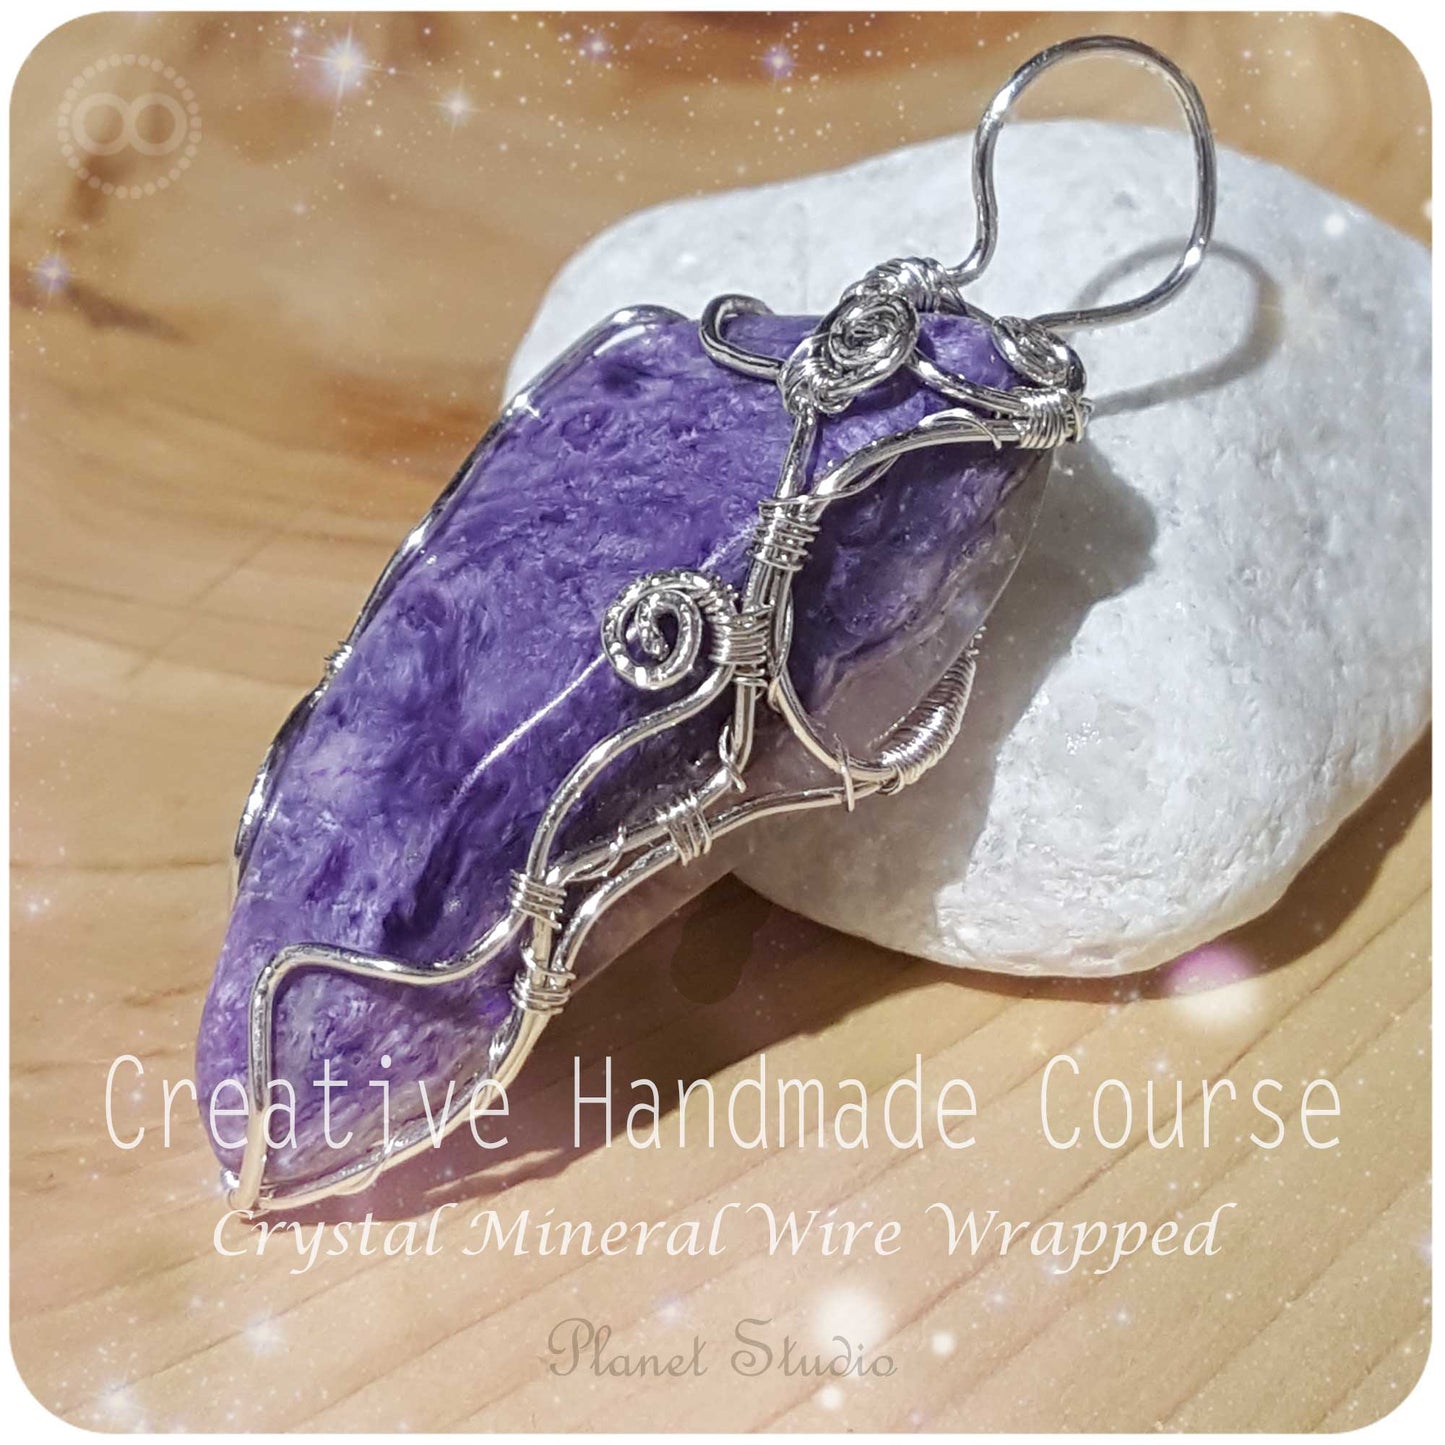 星球 ✹ 晶礦編織 :: 課程  Creative Handmade  Course ∞ Crystal Mineral Wire Wrapped